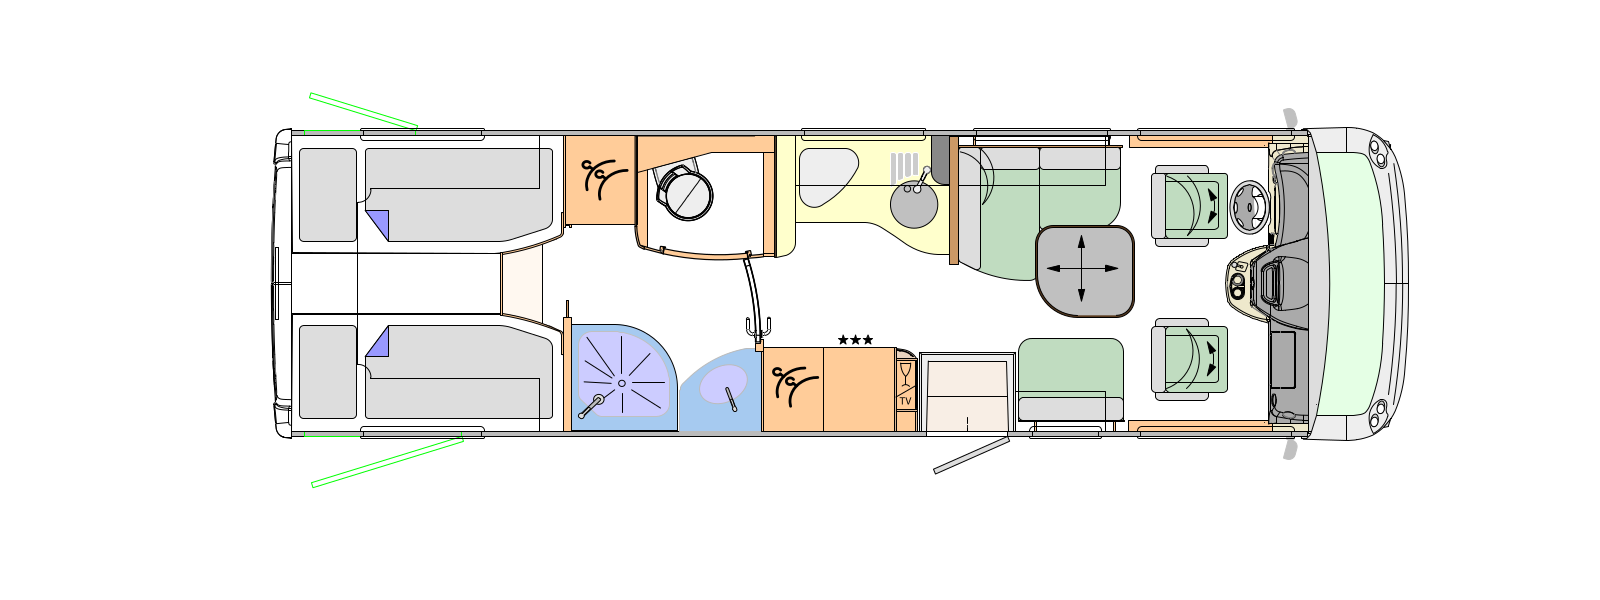 2018 Concorde Carver 844L Motorhome Floorplan Layout